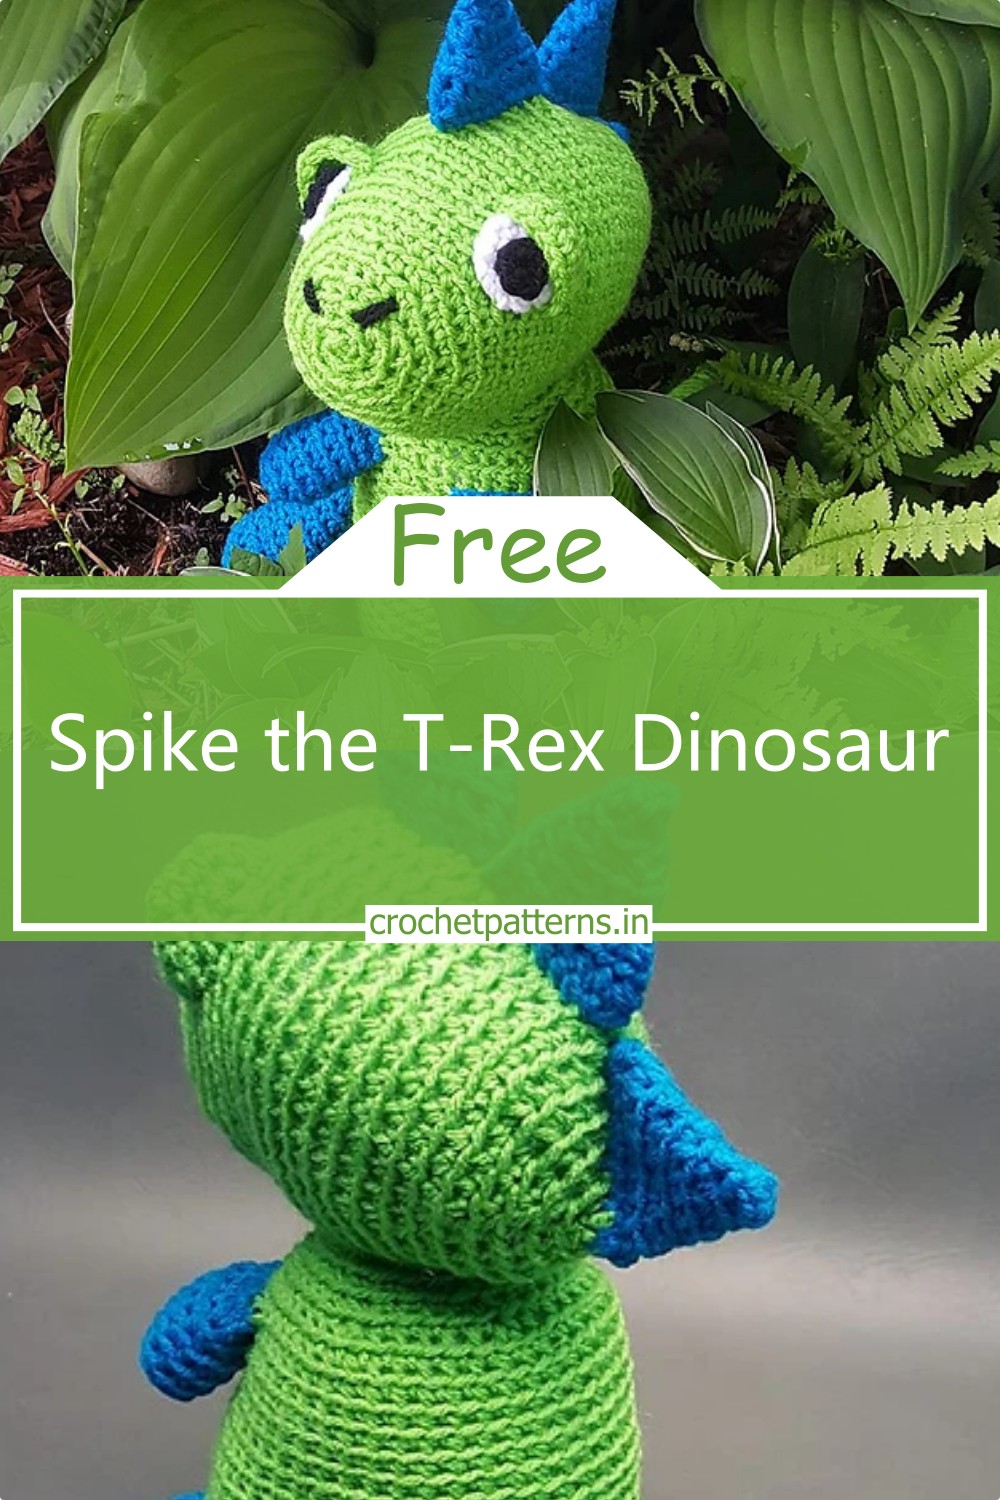 Spike the T-Rex Dinosaur